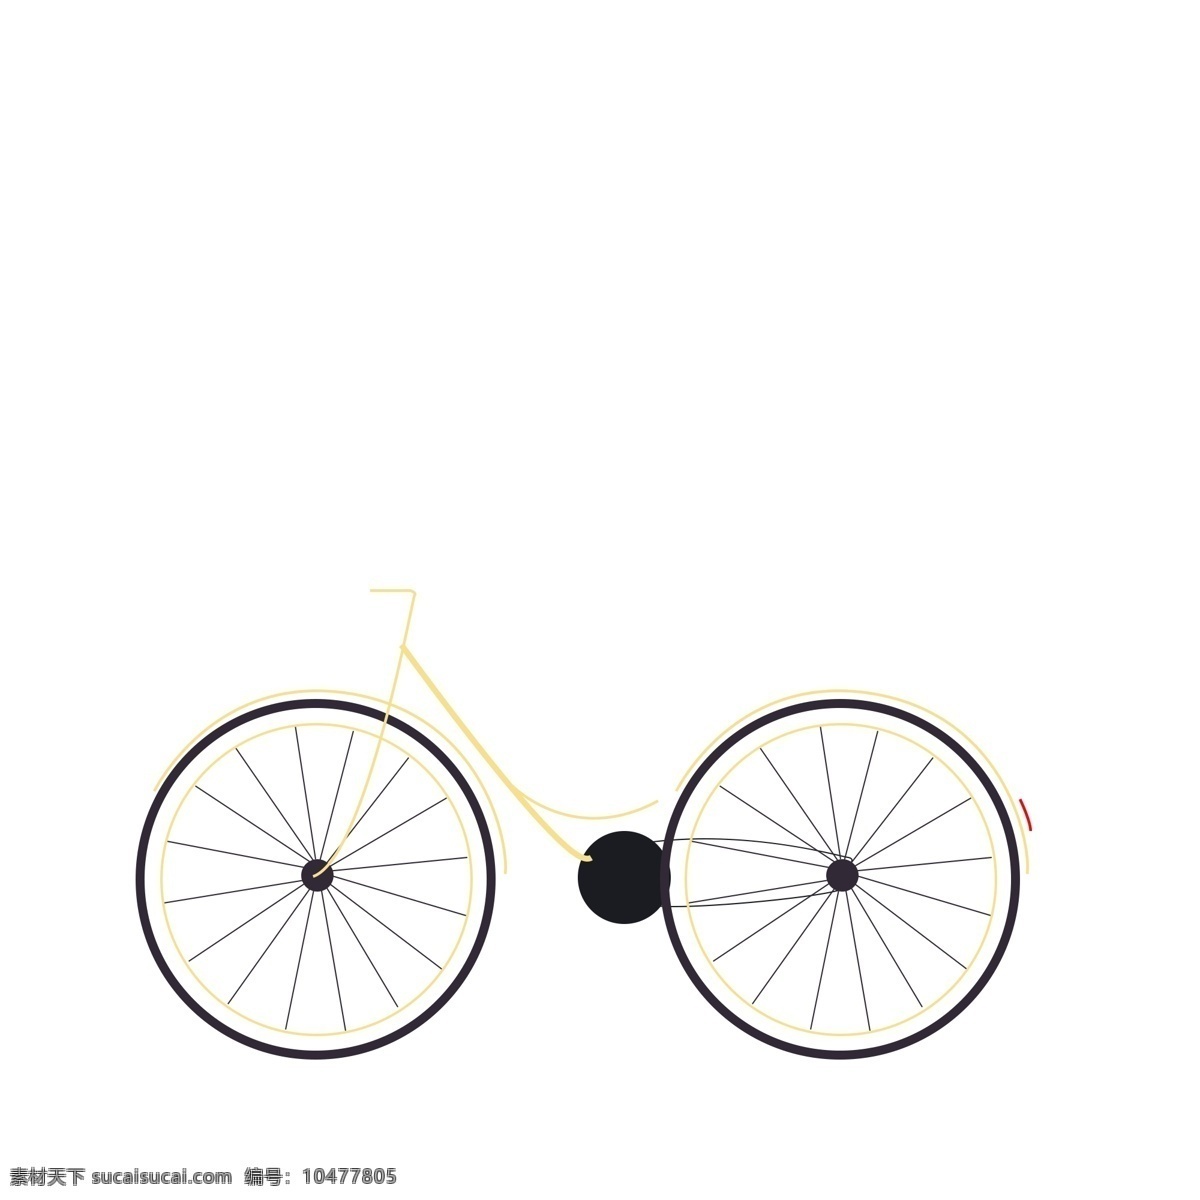 自行车 卡通 简约自行车 黄色自行车 手绘自行车 卡通自行车 单车 黄色单车 手绘可爱单车